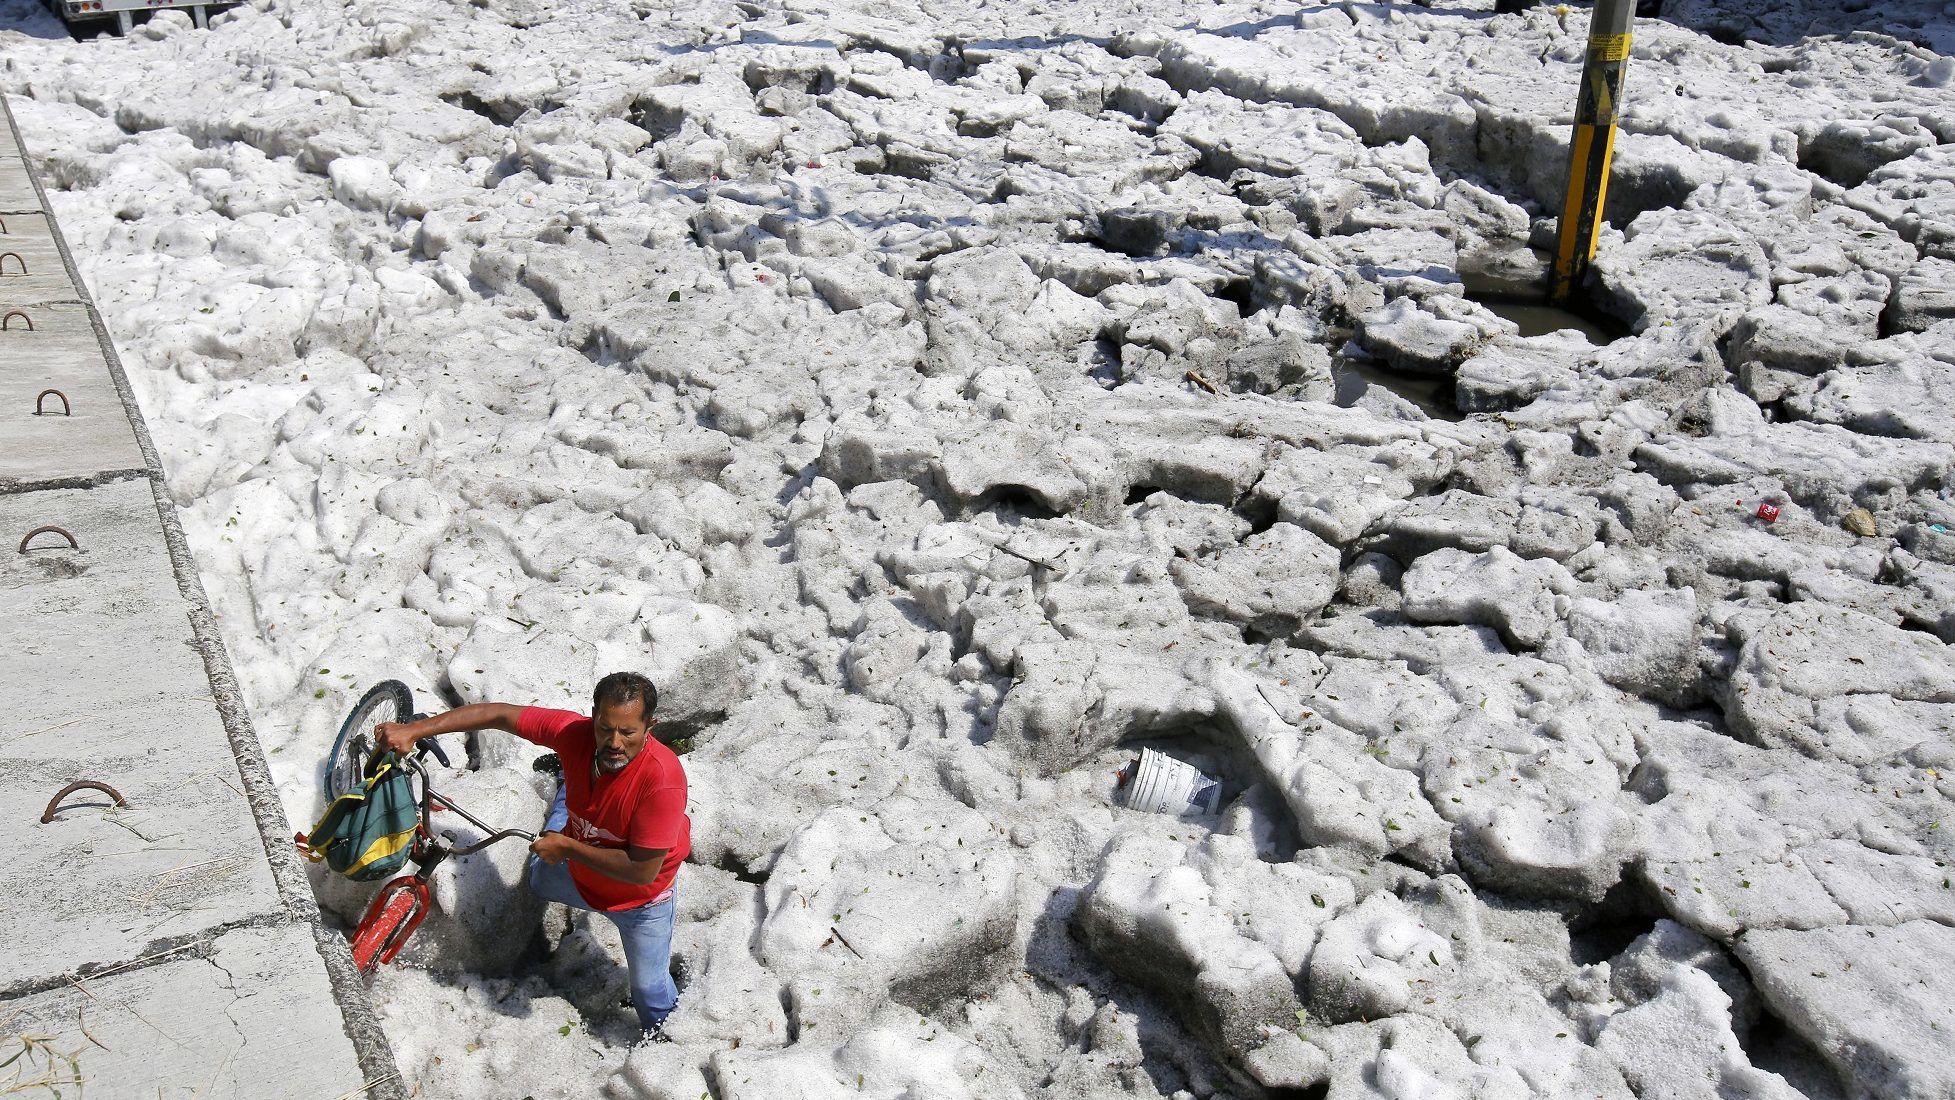 Másfél méter vastag jég borította be egy mexikói várost